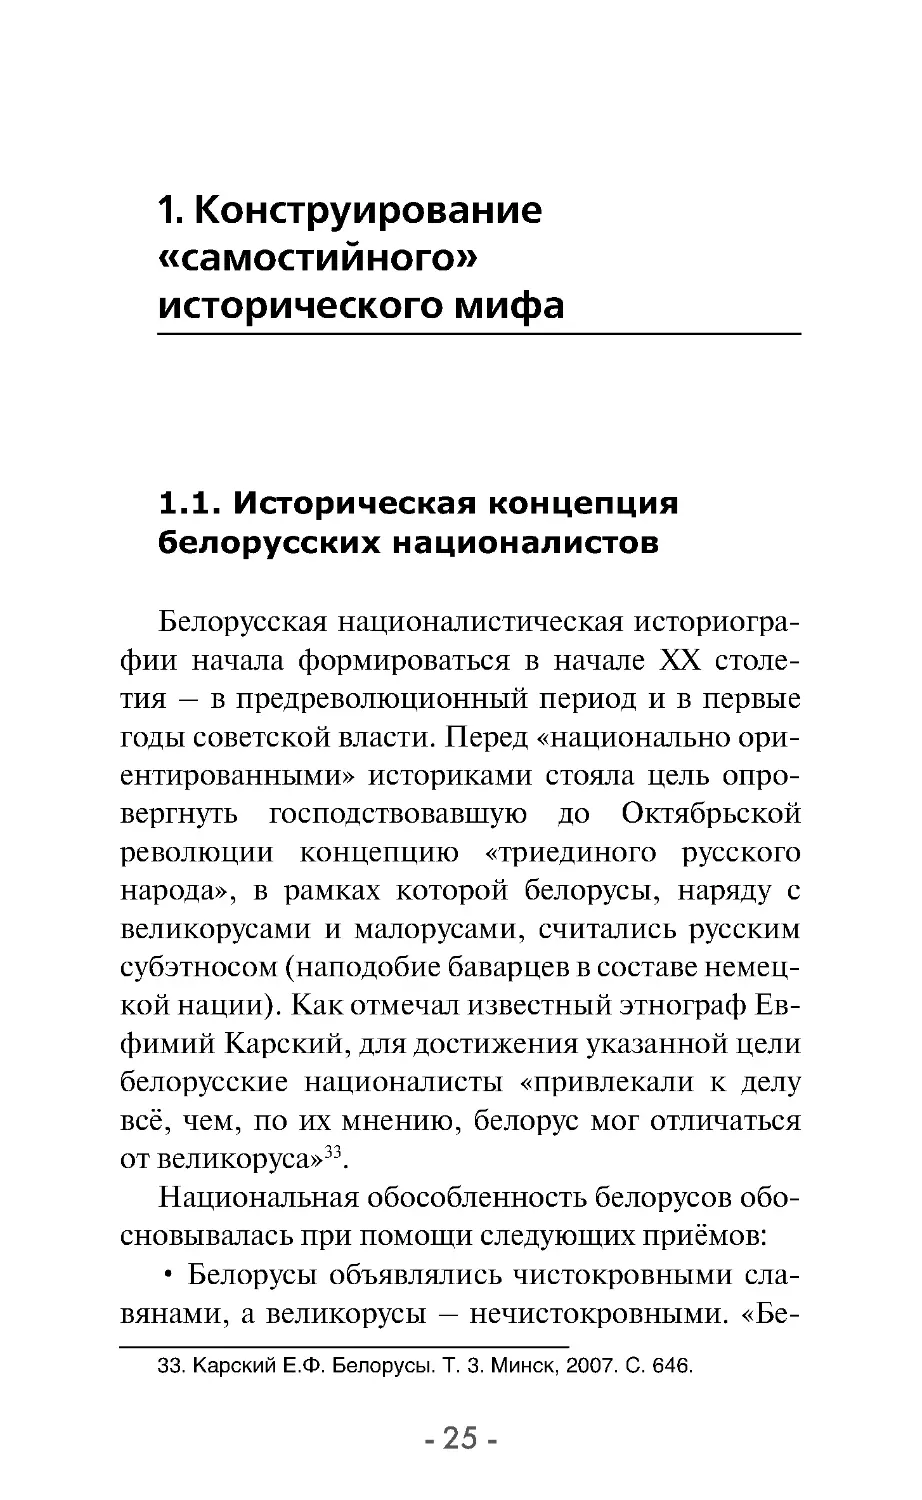 1. Конструирование «самостийного» исторического мифа
1.1. Историческая концепция белорусских националистов